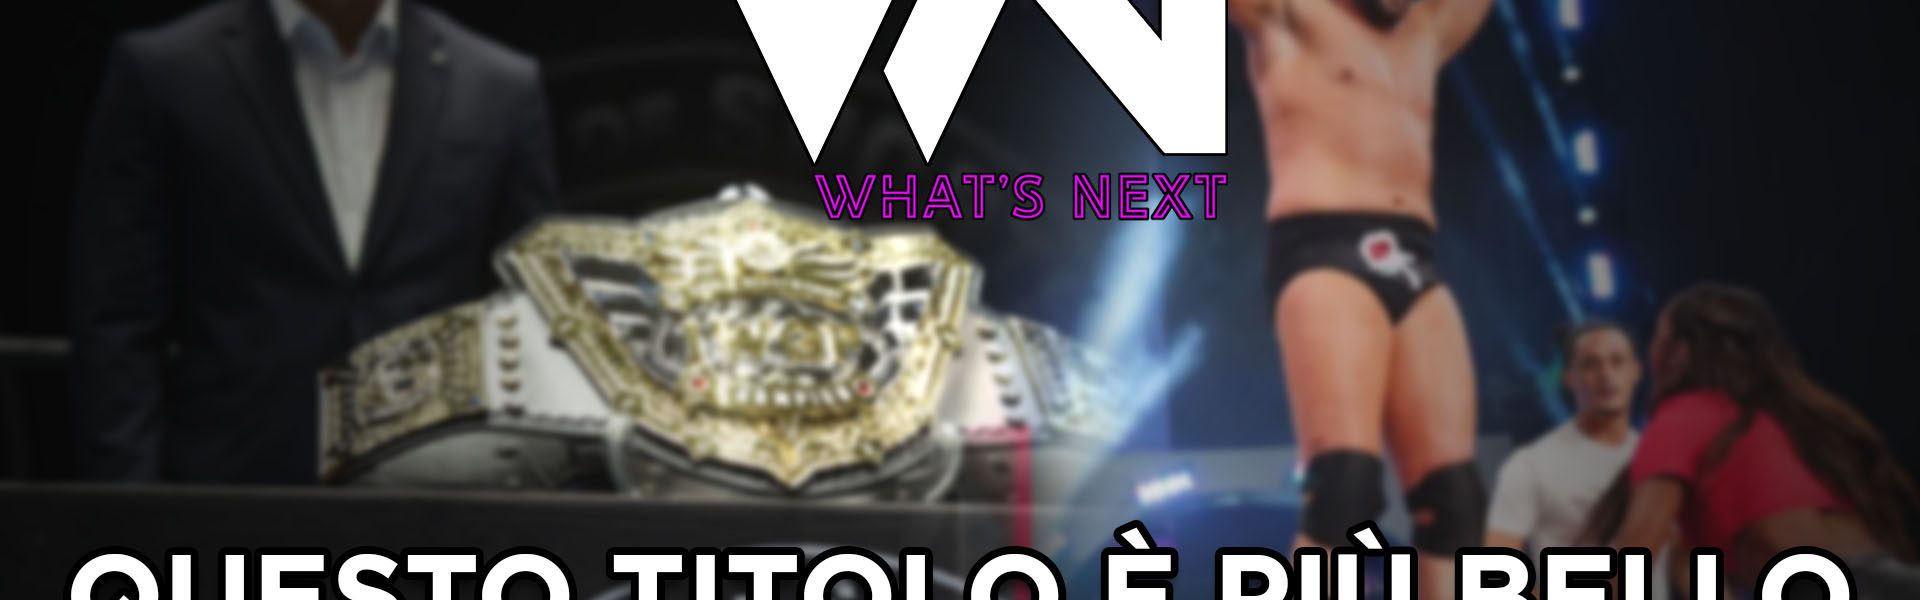 Questo titolo è più bello del nuovo titolo IWGP - What's Next #118